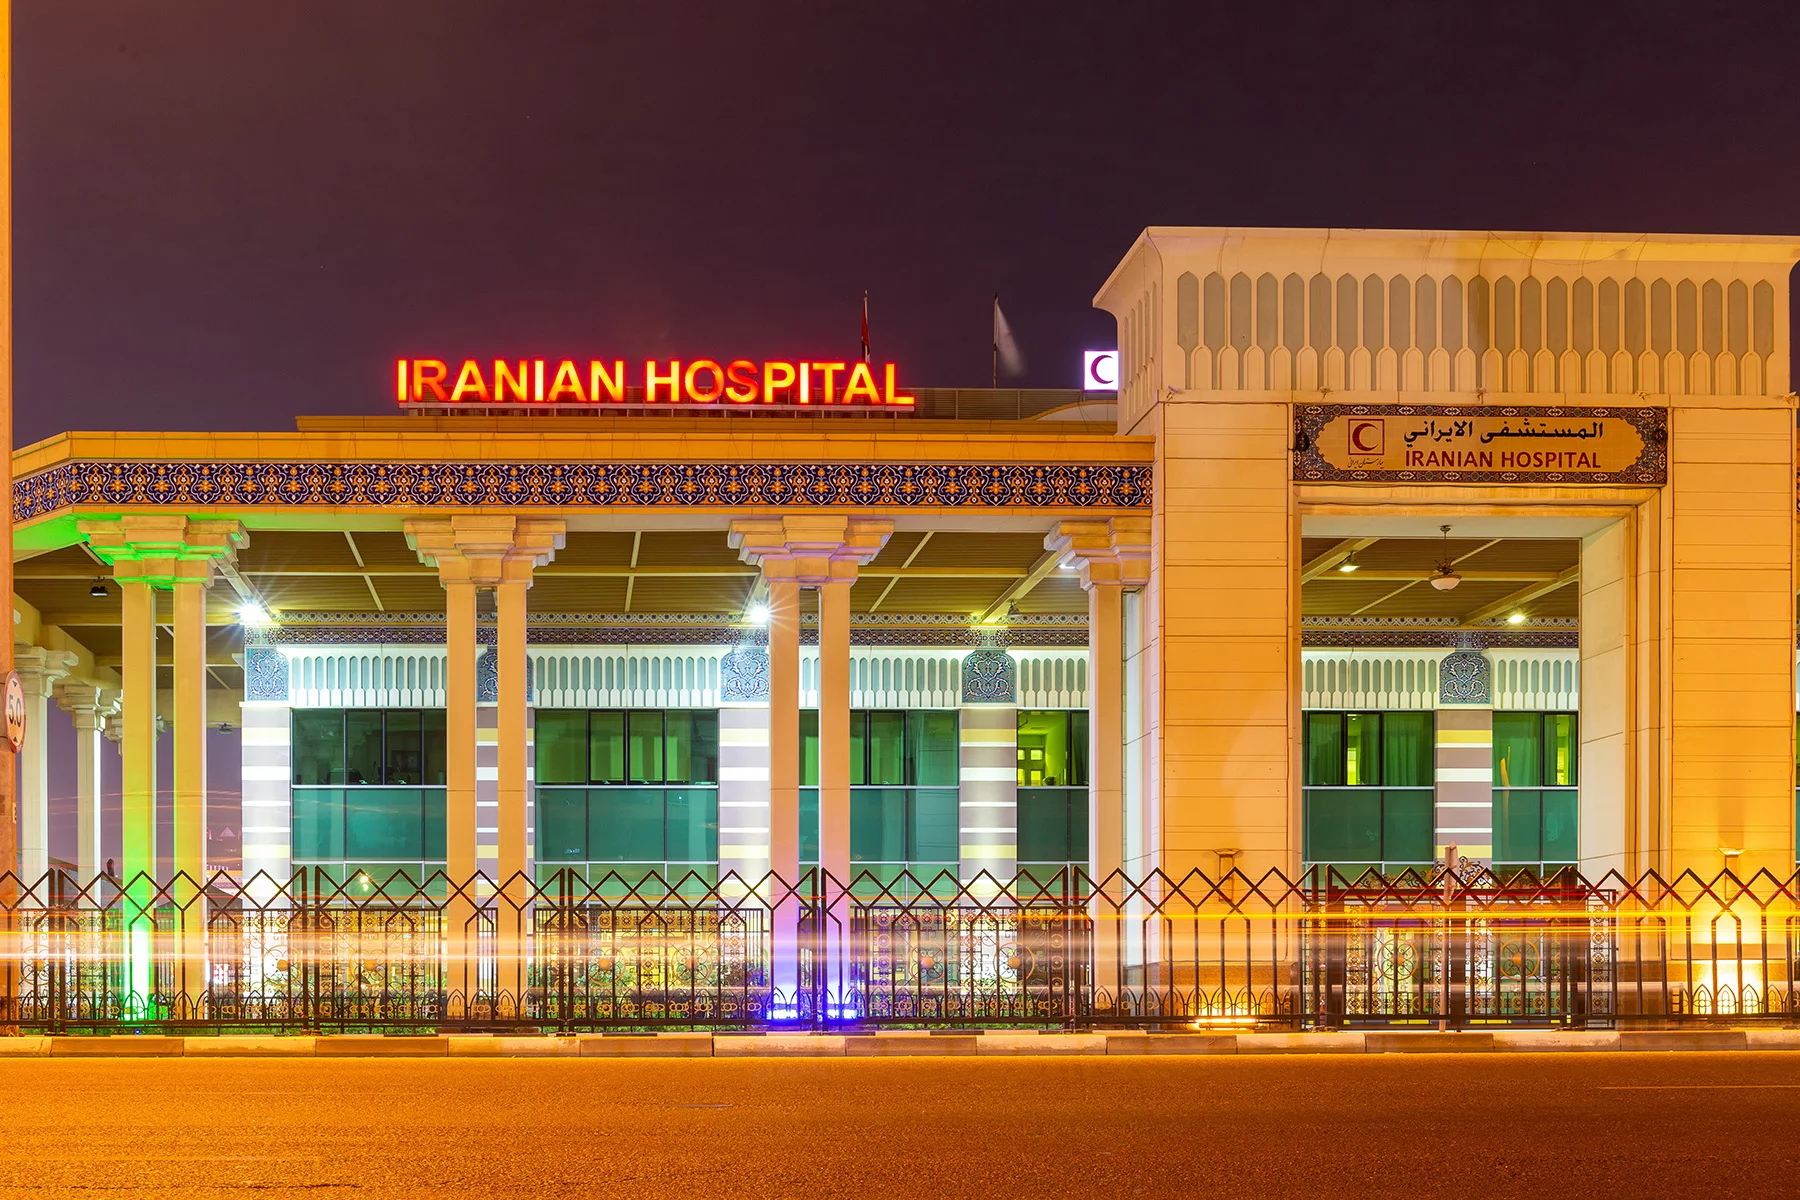 The Iranian Hospital in Dubai, UAE